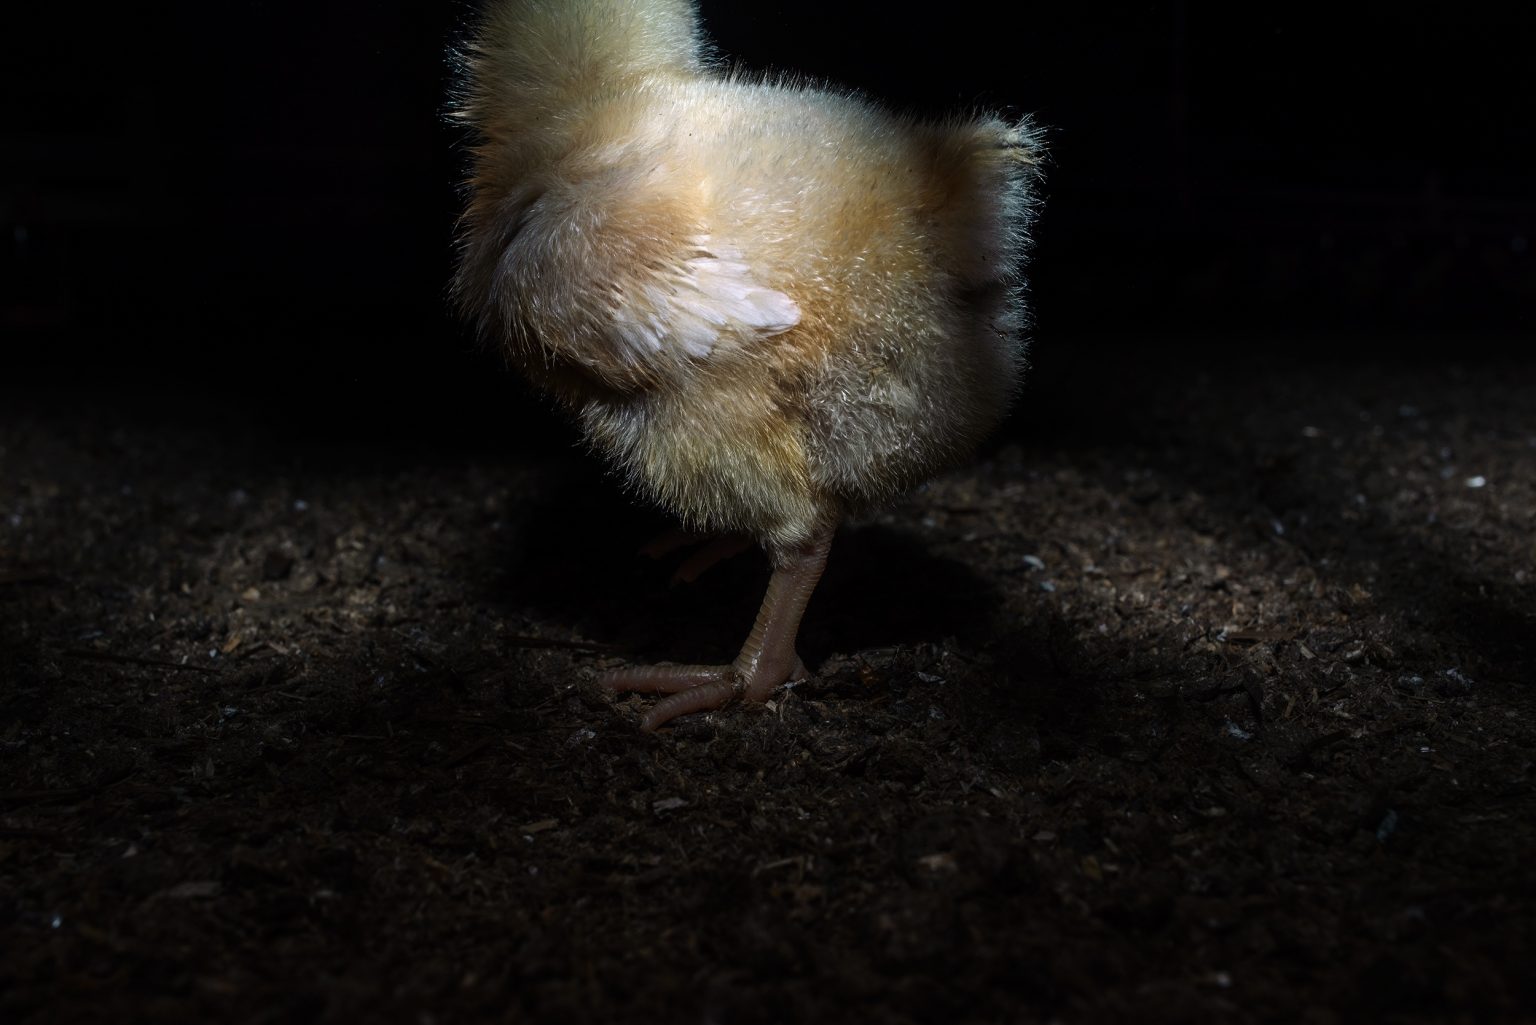 A few days old chick in a fettening chicken farm. Emilia Romagna. May 2017.

Un pulcino di pochi giorni in un allevamento di polli da ingrasso. Emilia Romagna. Maggio 2017.